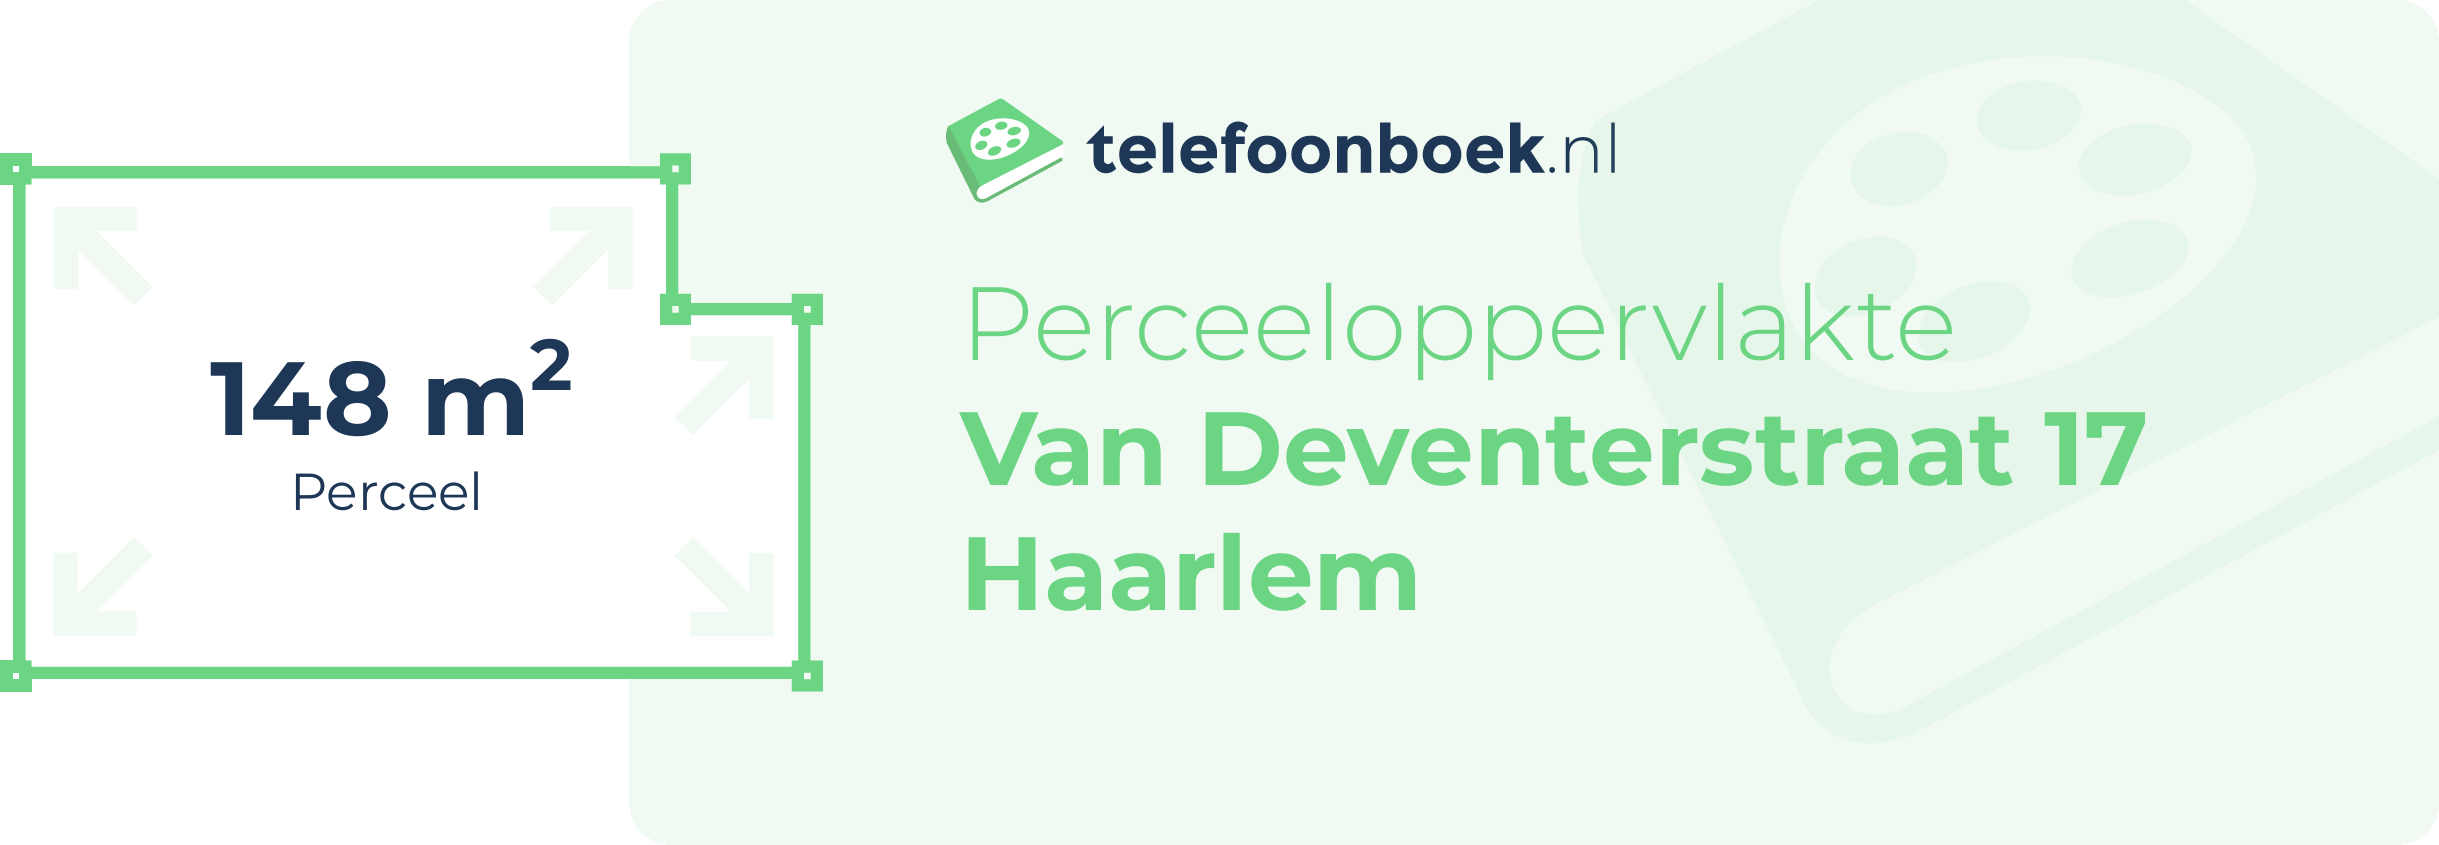 Perceeloppervlakte Van Deventerstraat 17 Haarlem